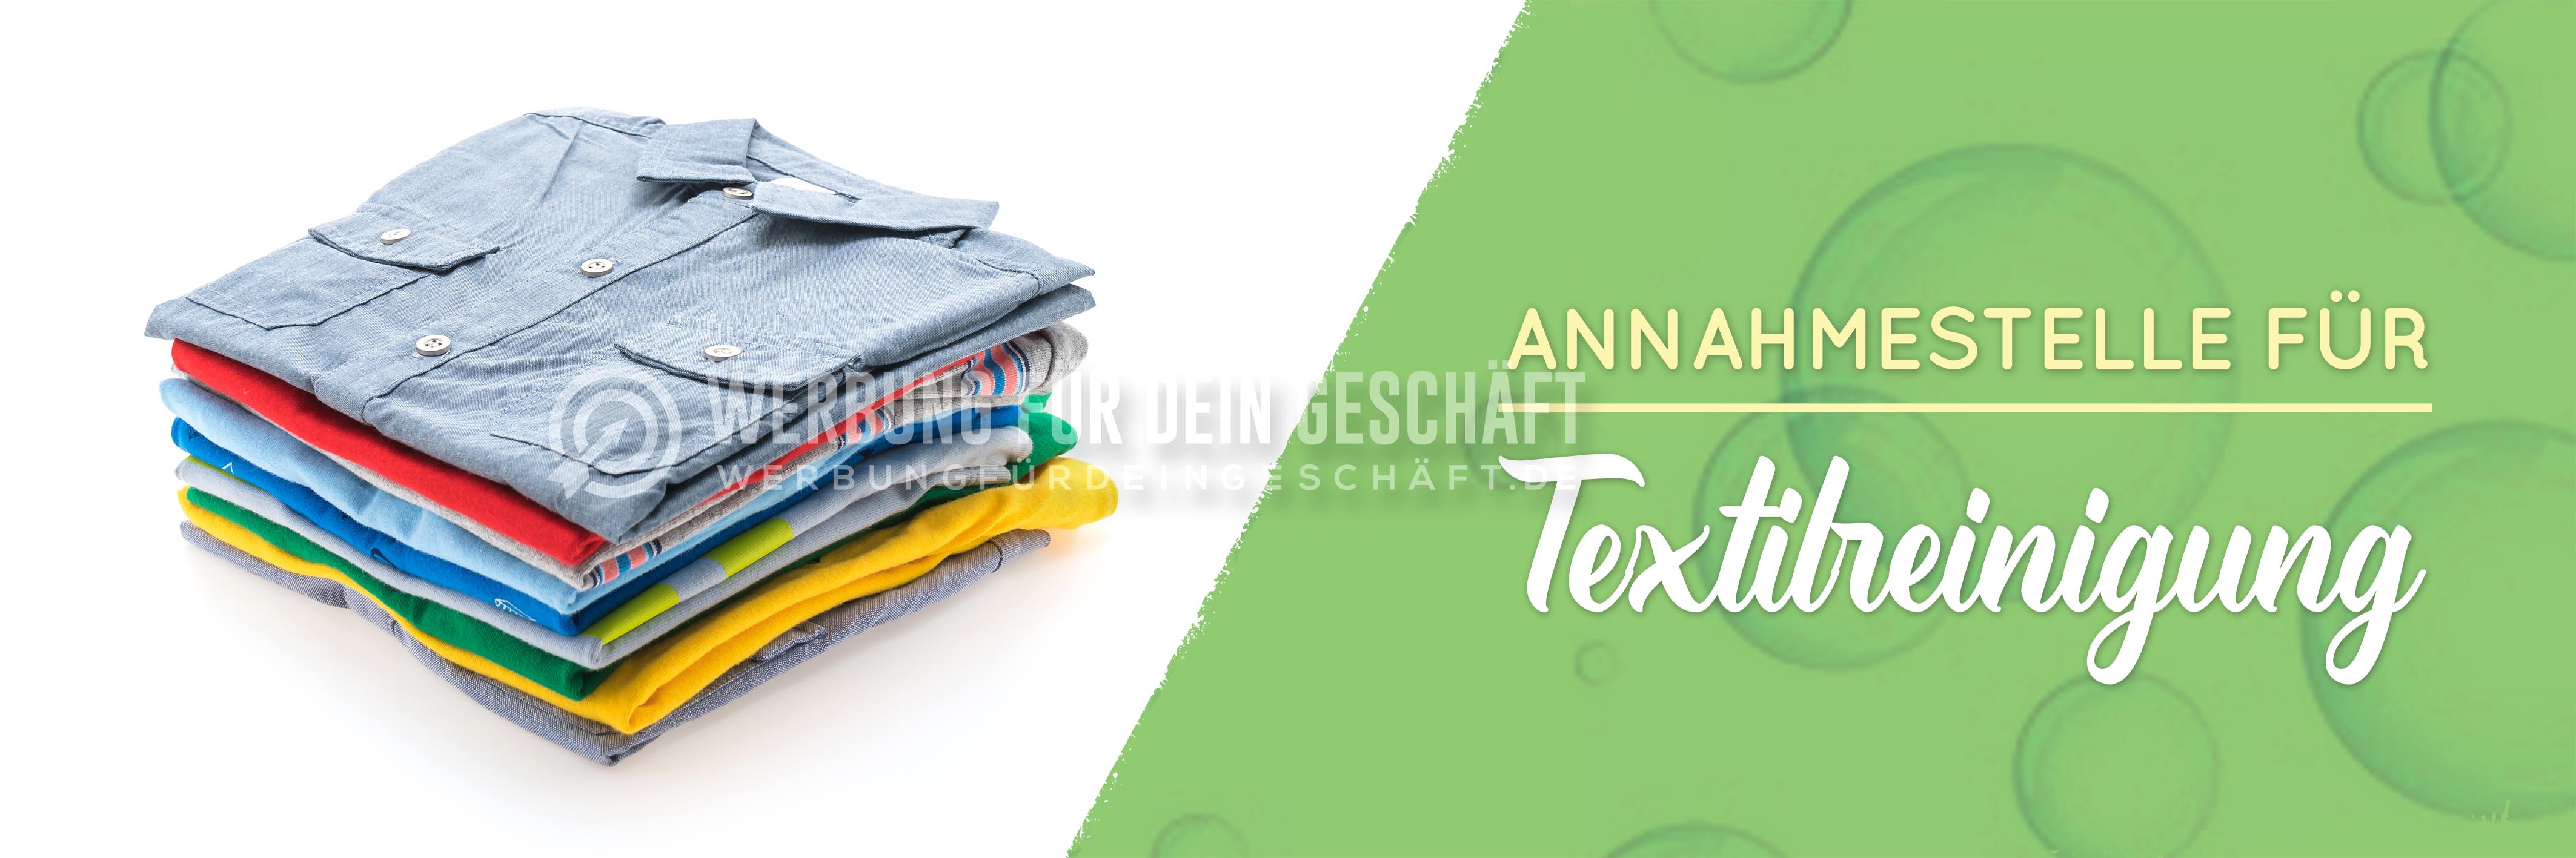 3:1 | Annahmestelle für Textilreinigung Werbebanner | Poster für Reinigung | 3 zu 1 Format